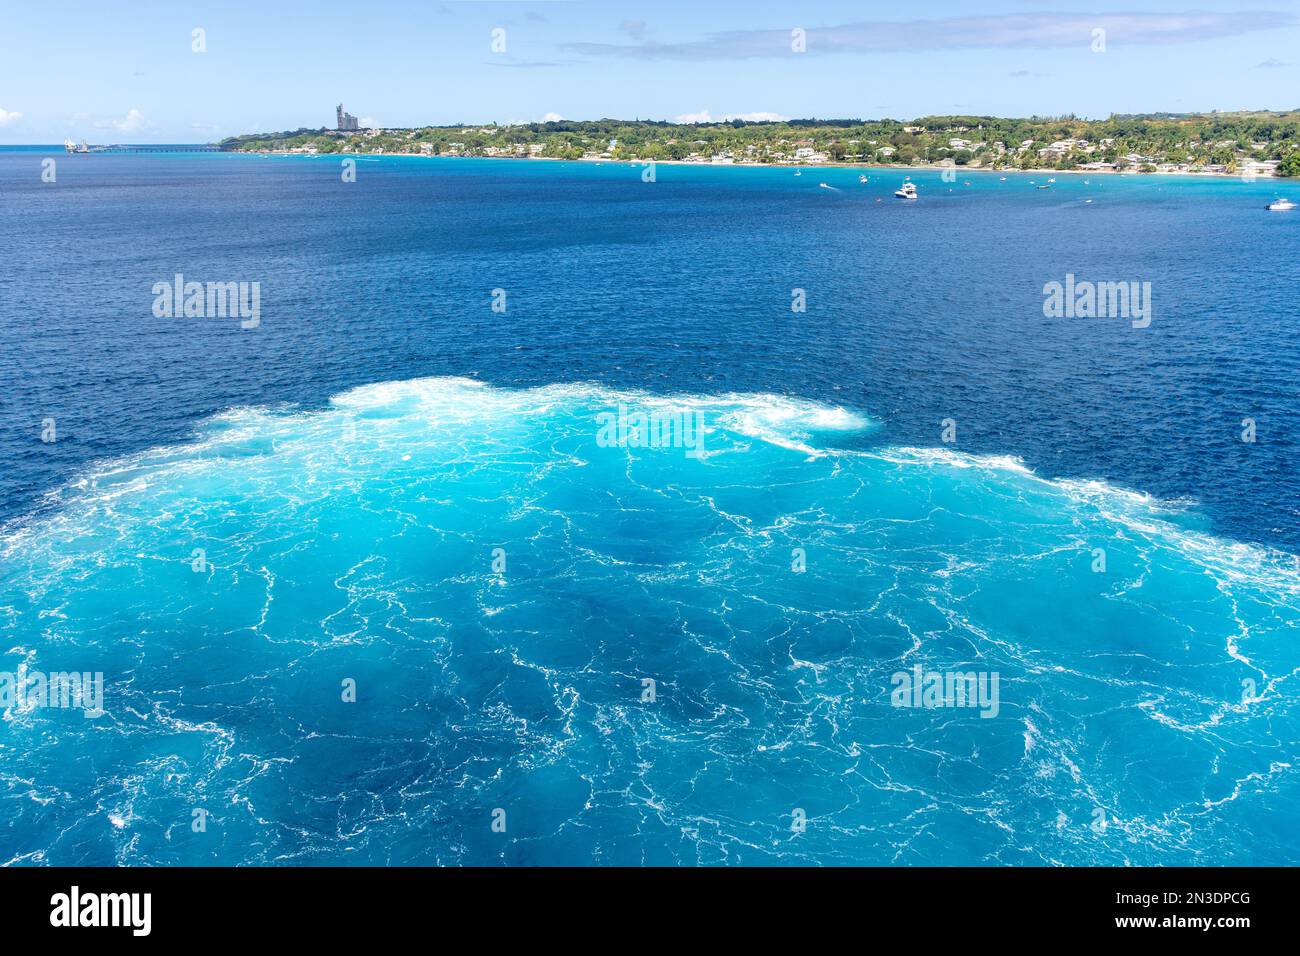 Rückschub-Aufladung von P&O Arvia Kreuzfahrtschiff, Bridgetown, St. Michael Parish, Barbados, kleine Antillen, Karibik Stockfoto